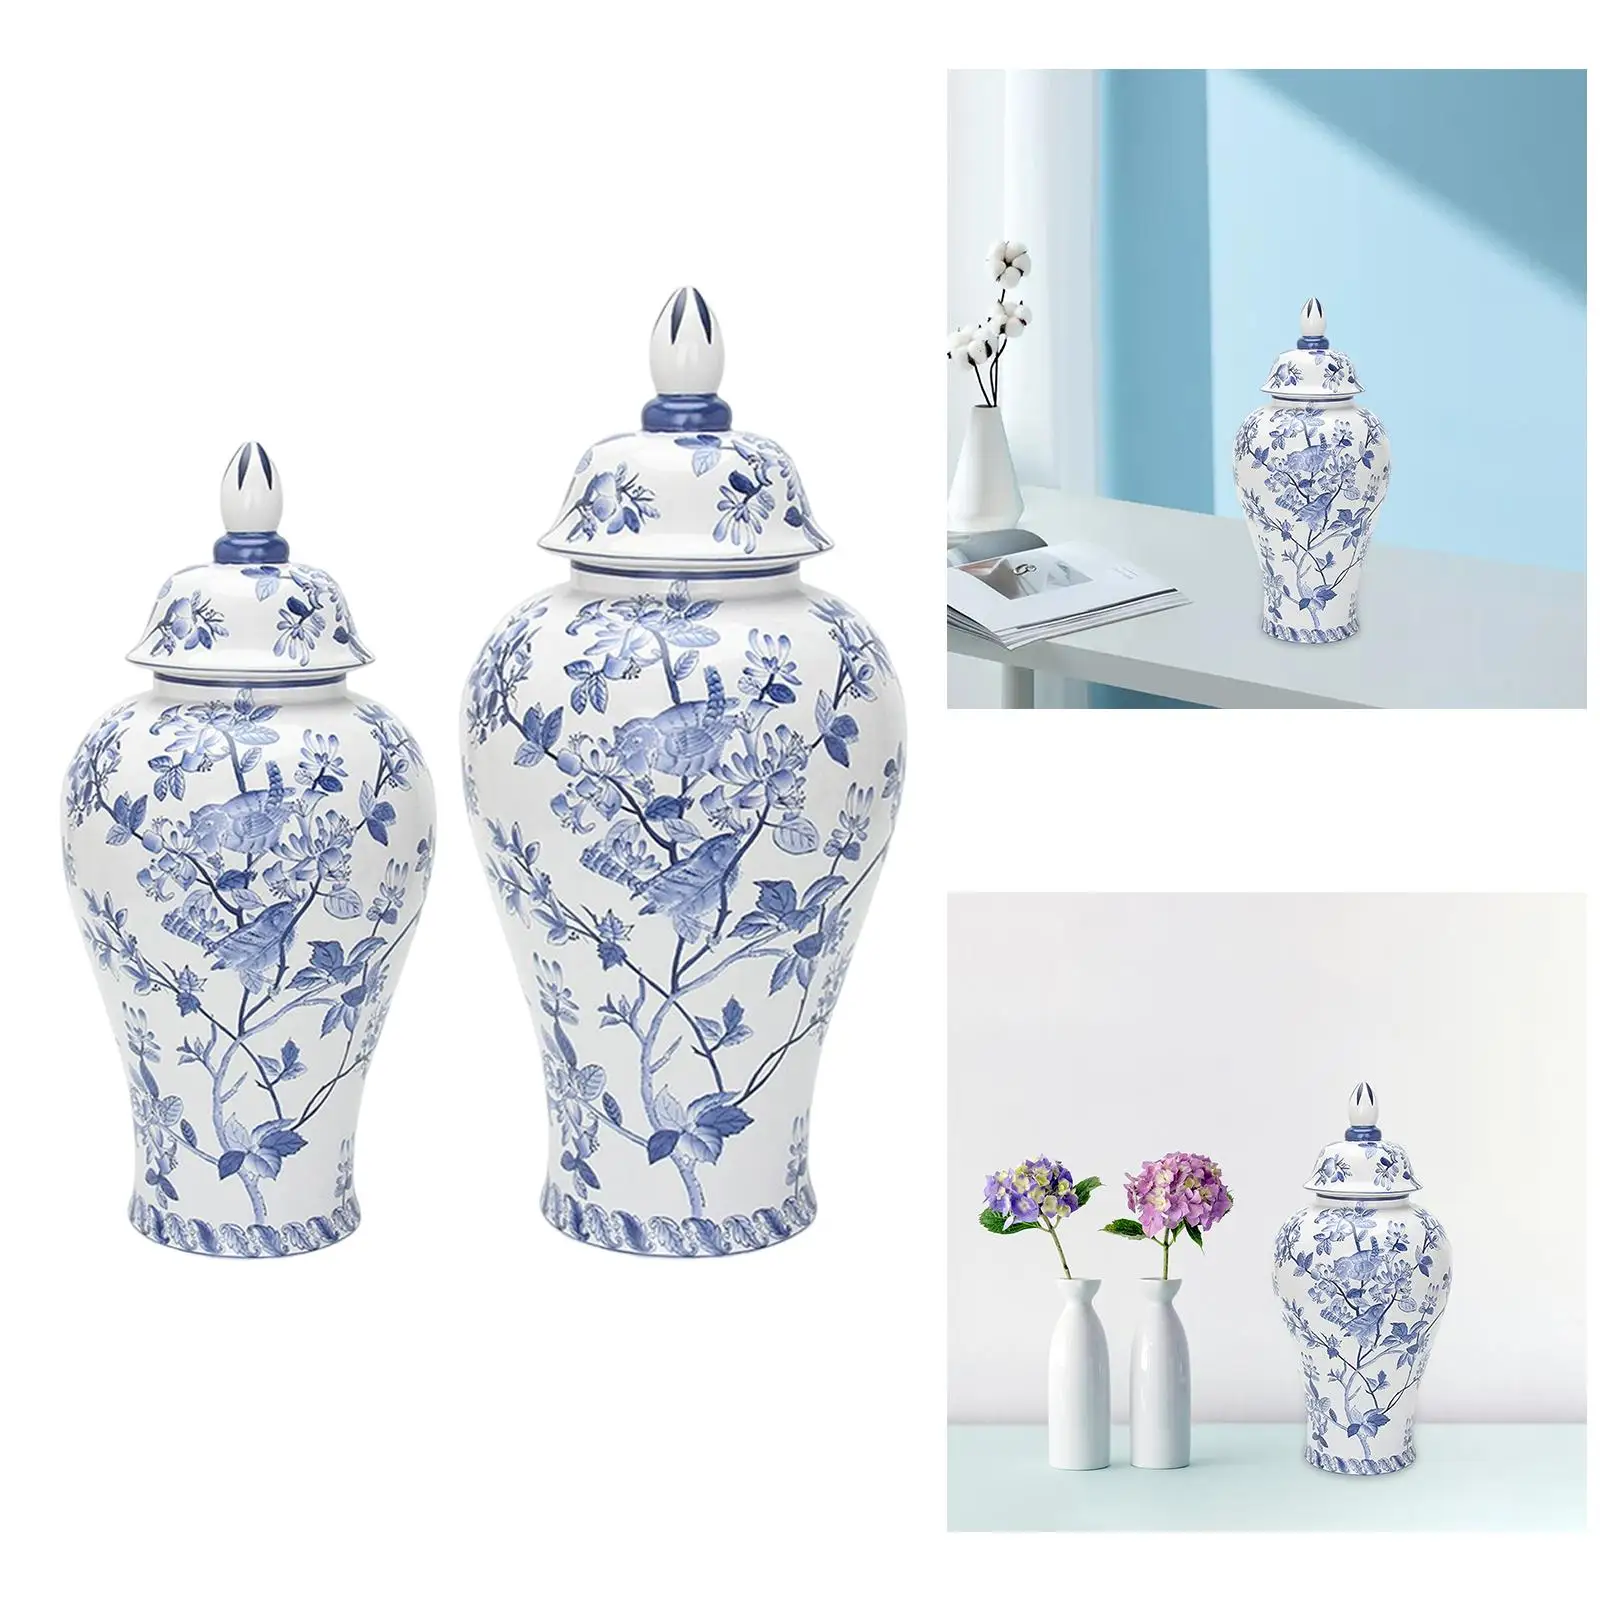 Porcelain Ginger Jar Tank Storage Jar Ceramic Flower Vase for Dining Table